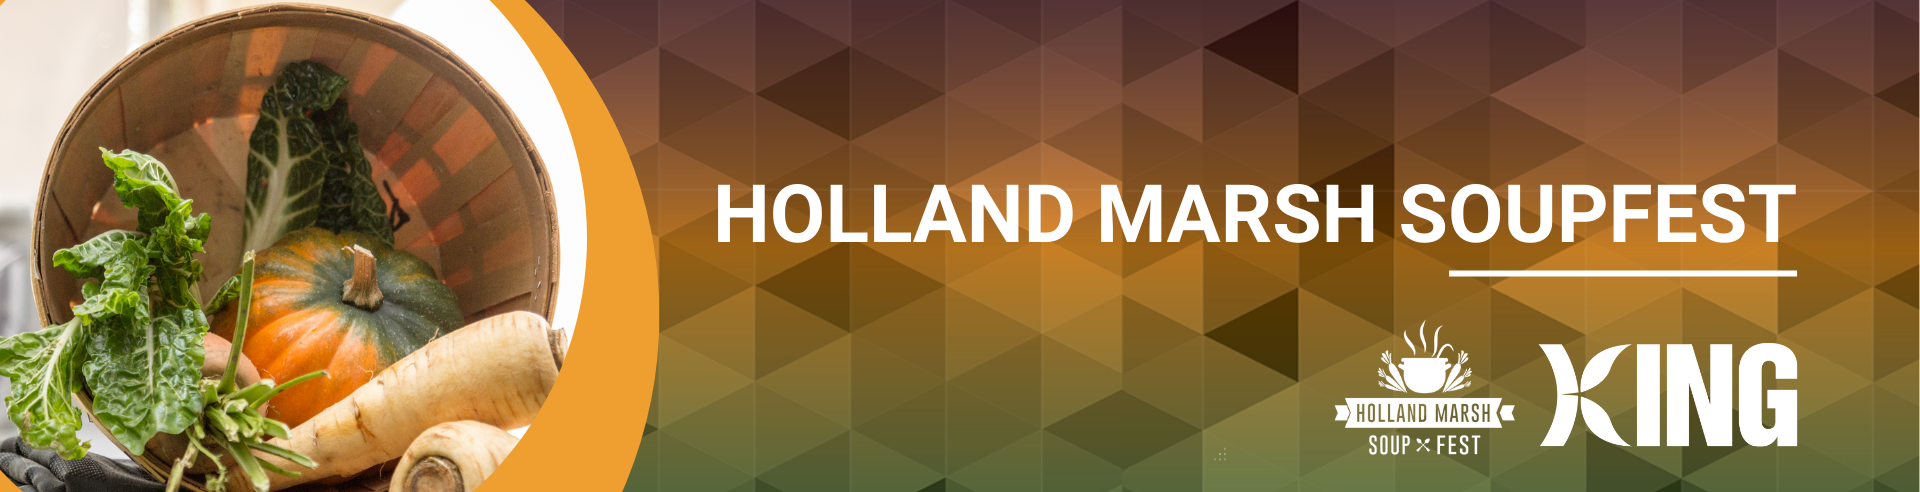 Holland Marsh Soupfest